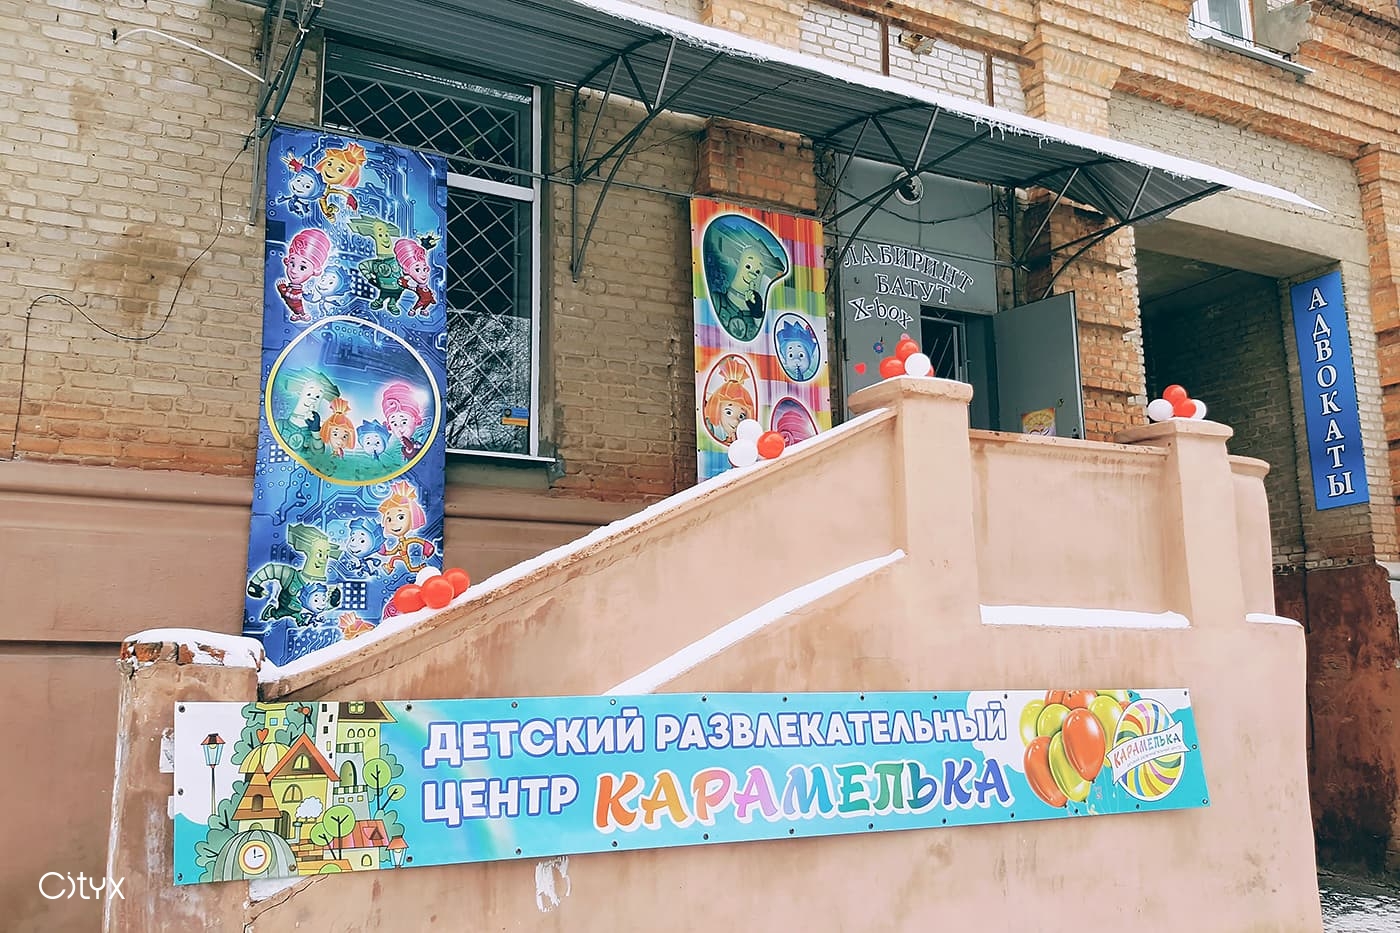 Детский развлекательный центр «Карамелька» ХТЗ